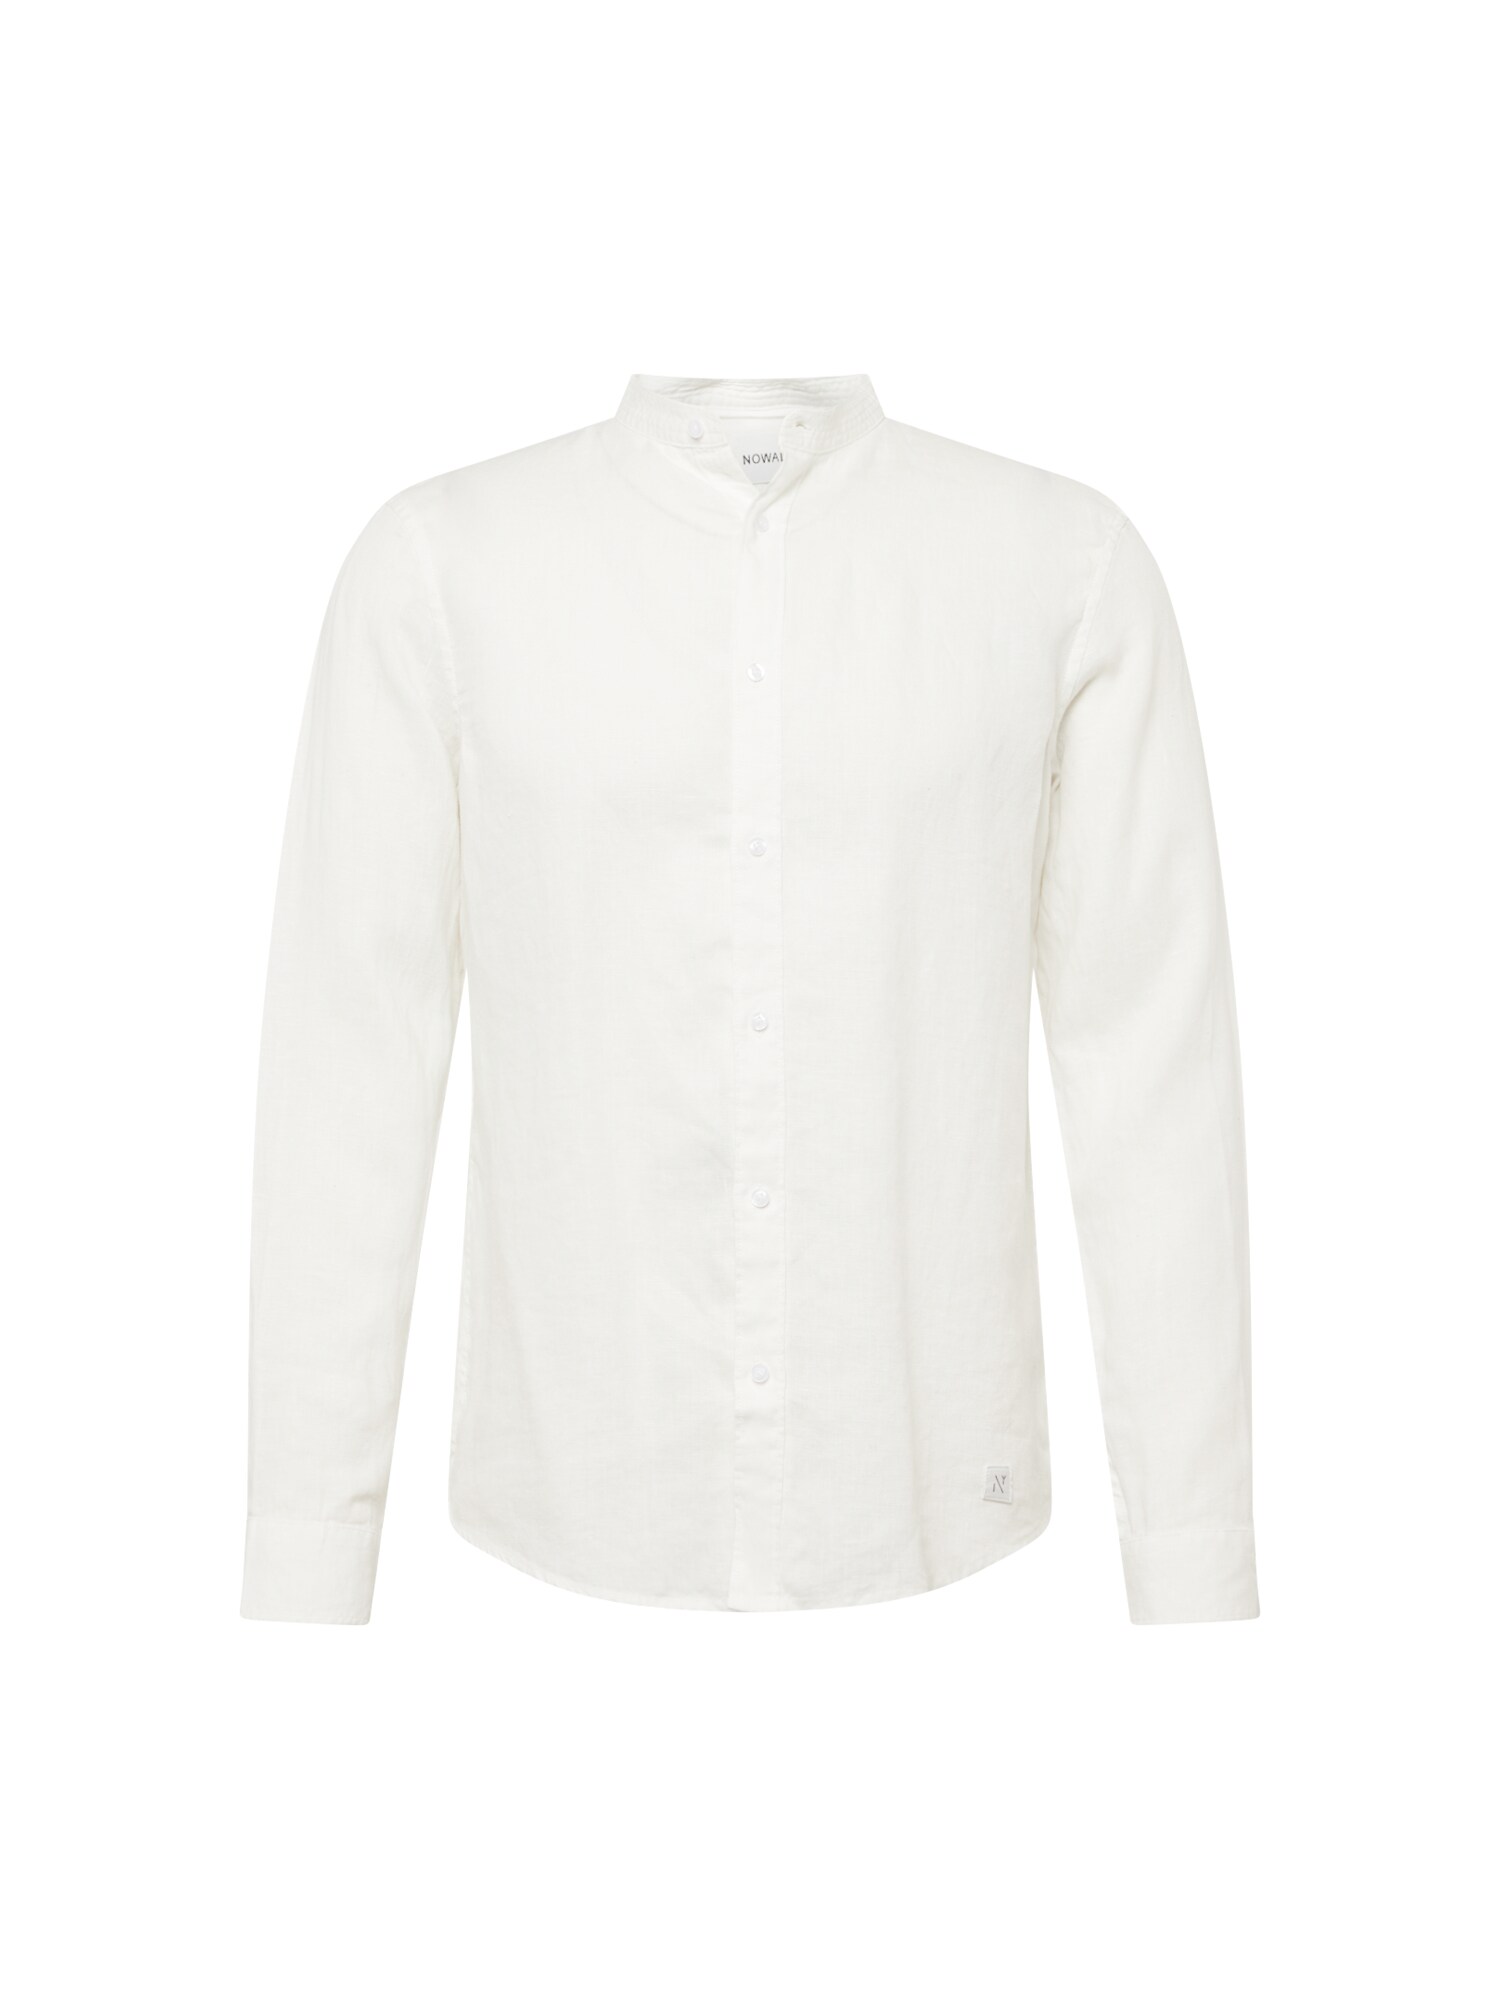 NOWADAYS Marškiniai natūrali balta